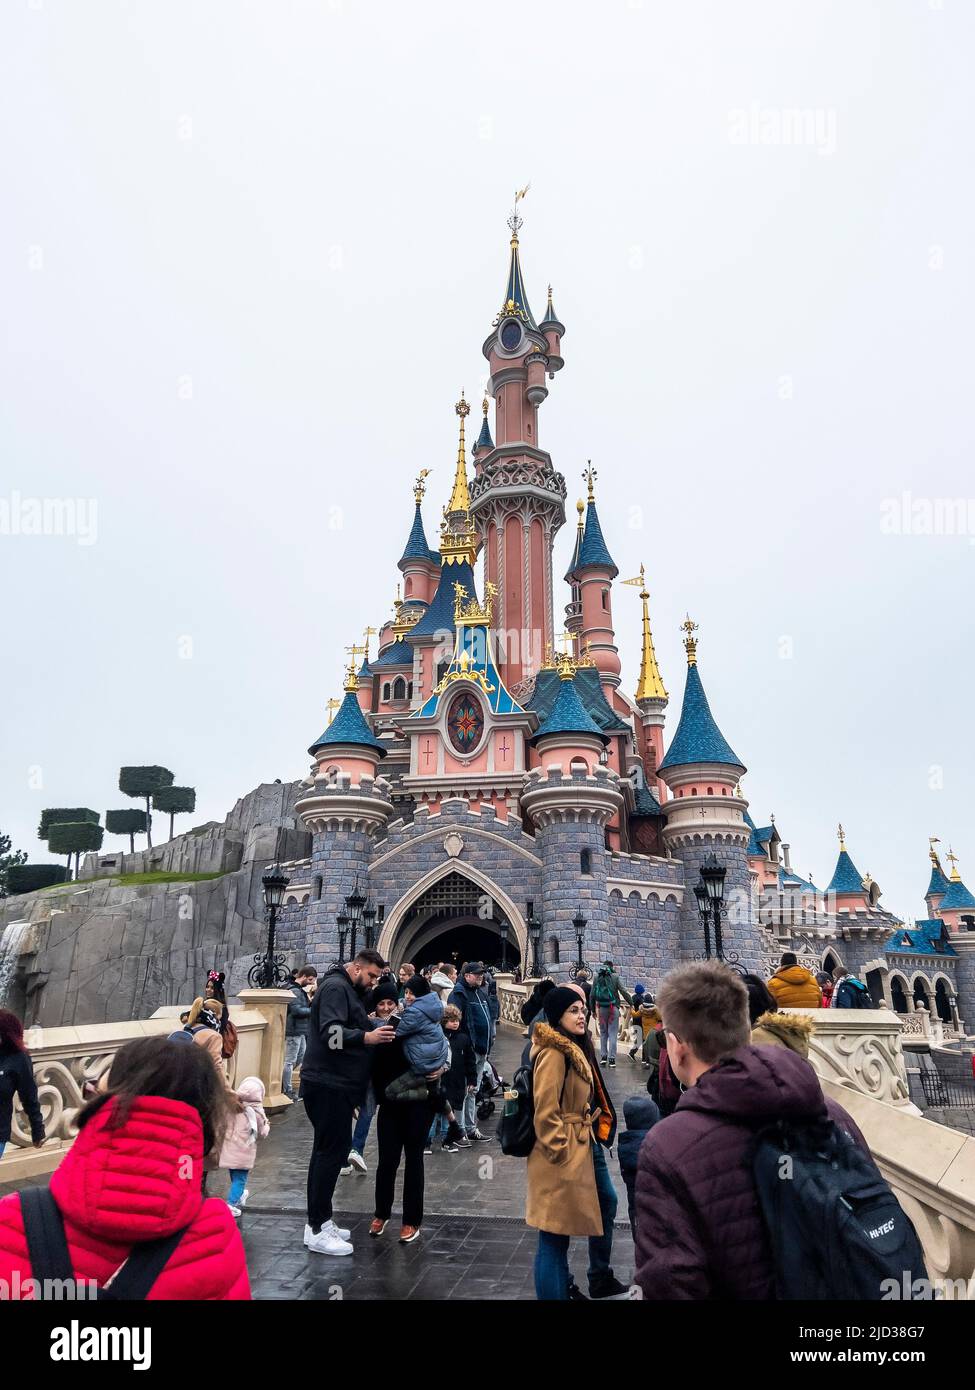 Paris, France - 04/05/2022: Personnes marchant vers le célèbre et emblématique bâtiment des parcs Disneyland. Château de la Belle au Bois dormant par temps nuageux. Banque D'Images